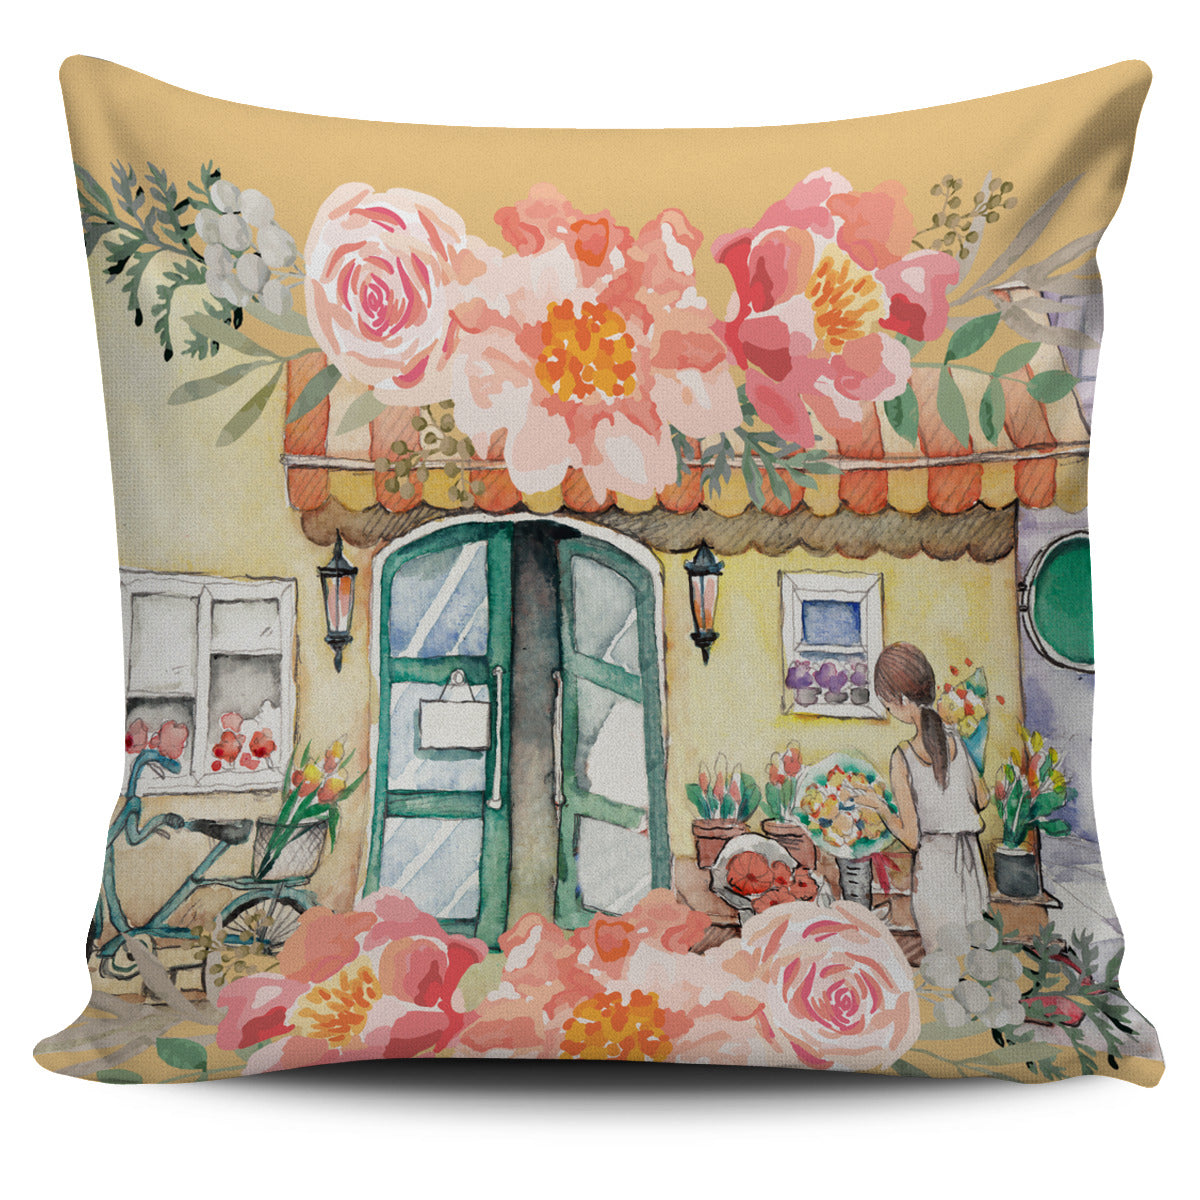 Watercolor Flower Shop Pillow Cover